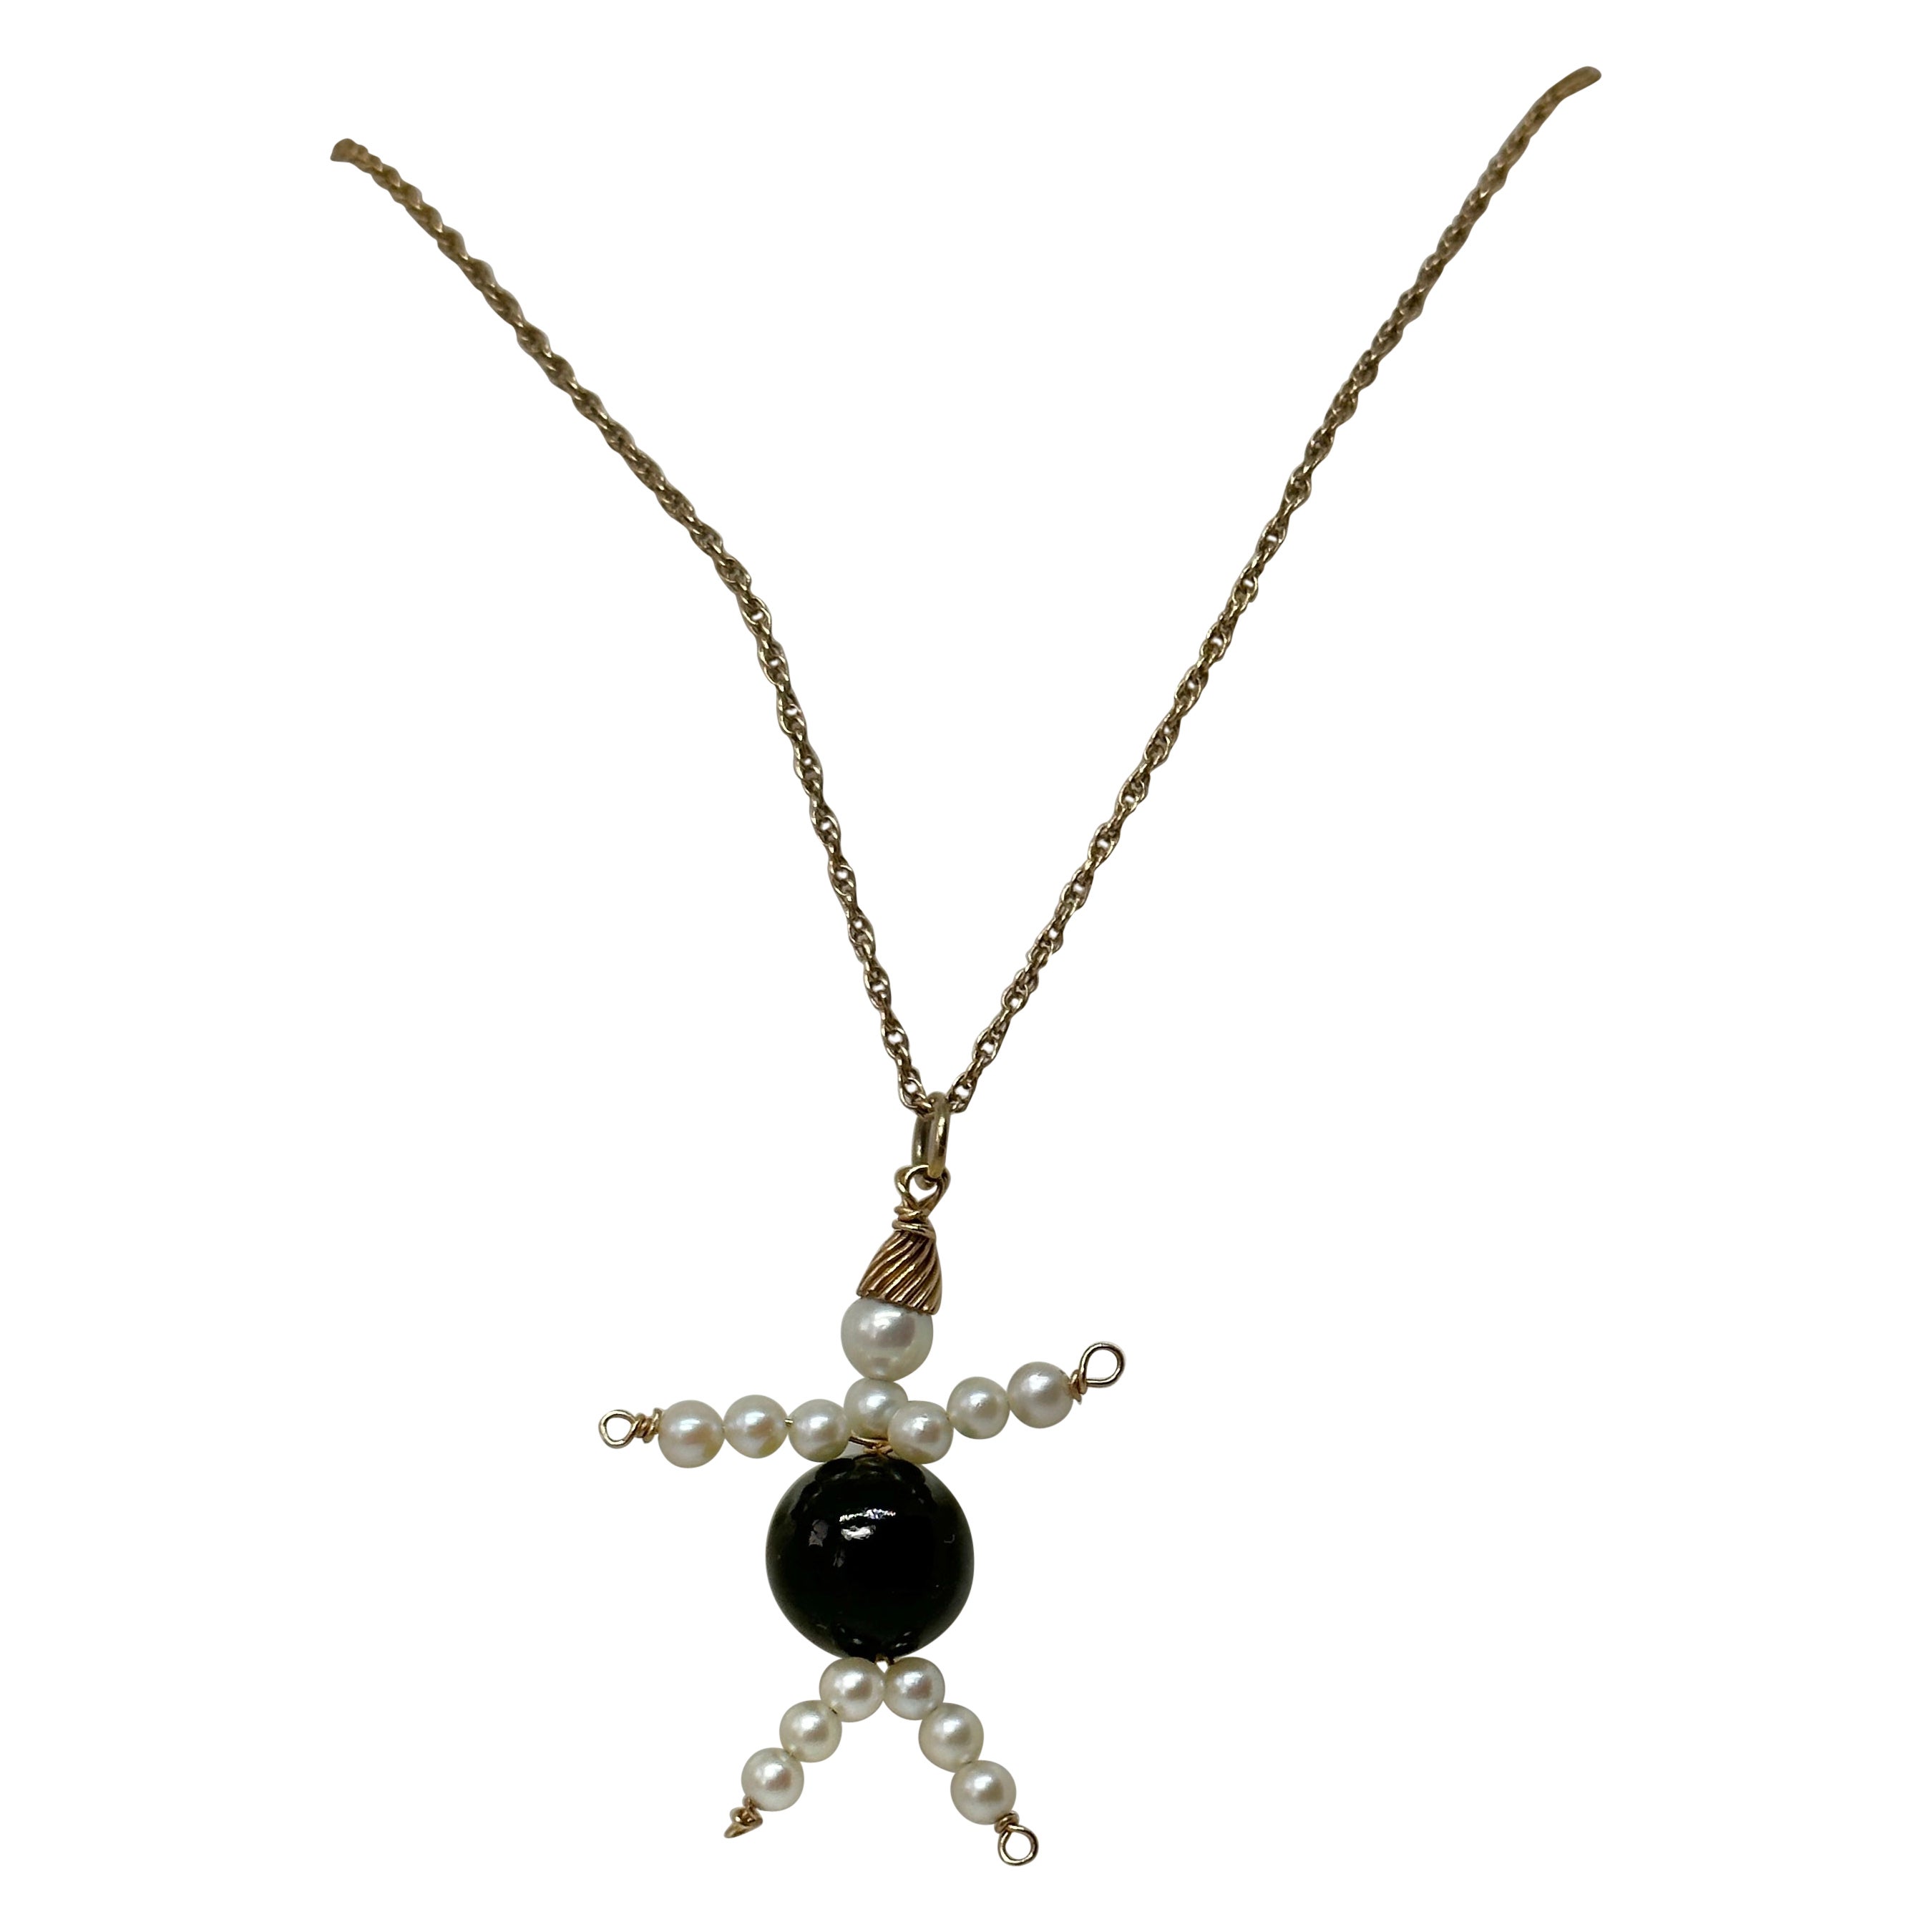 Lady Man Anhänger Charm-Halskette aus 14 Karat Gold mit schwarzem Onyx und Perle